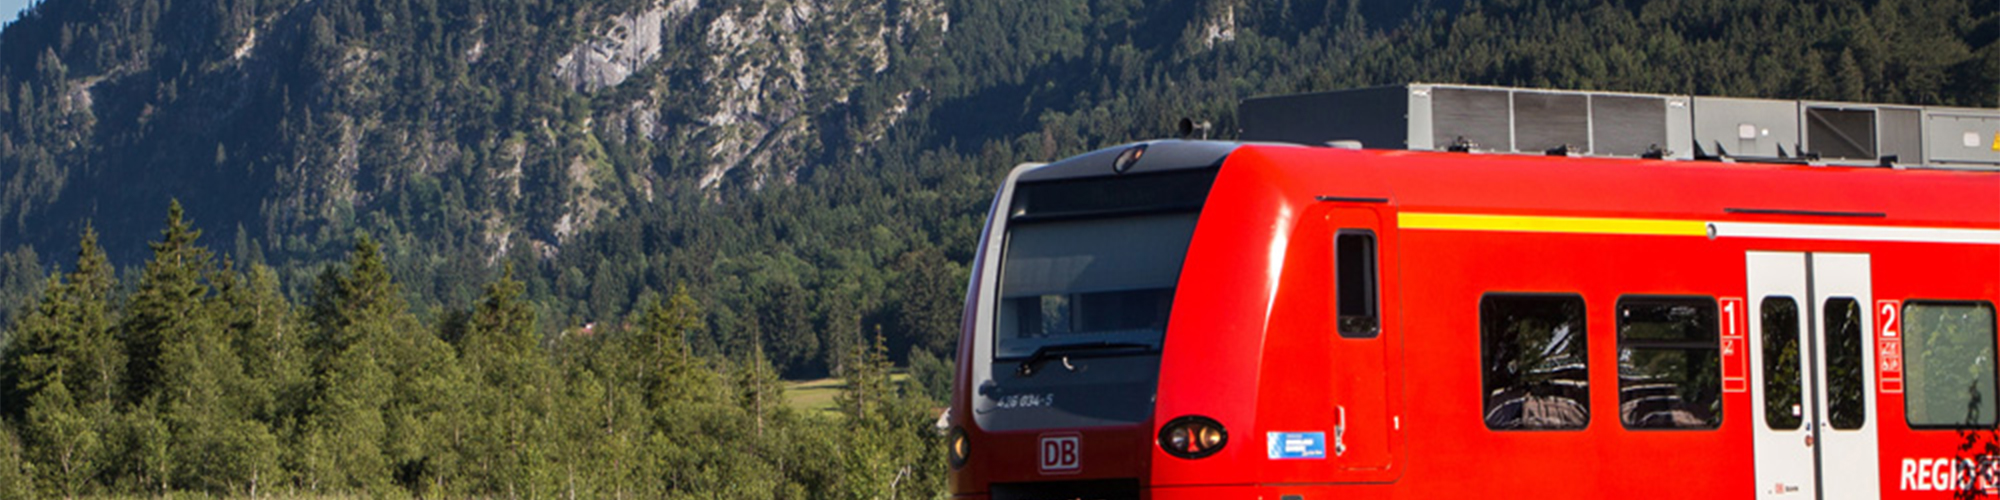 Geheimtipp für schöne Bahnstrecken DB Regio Bayern